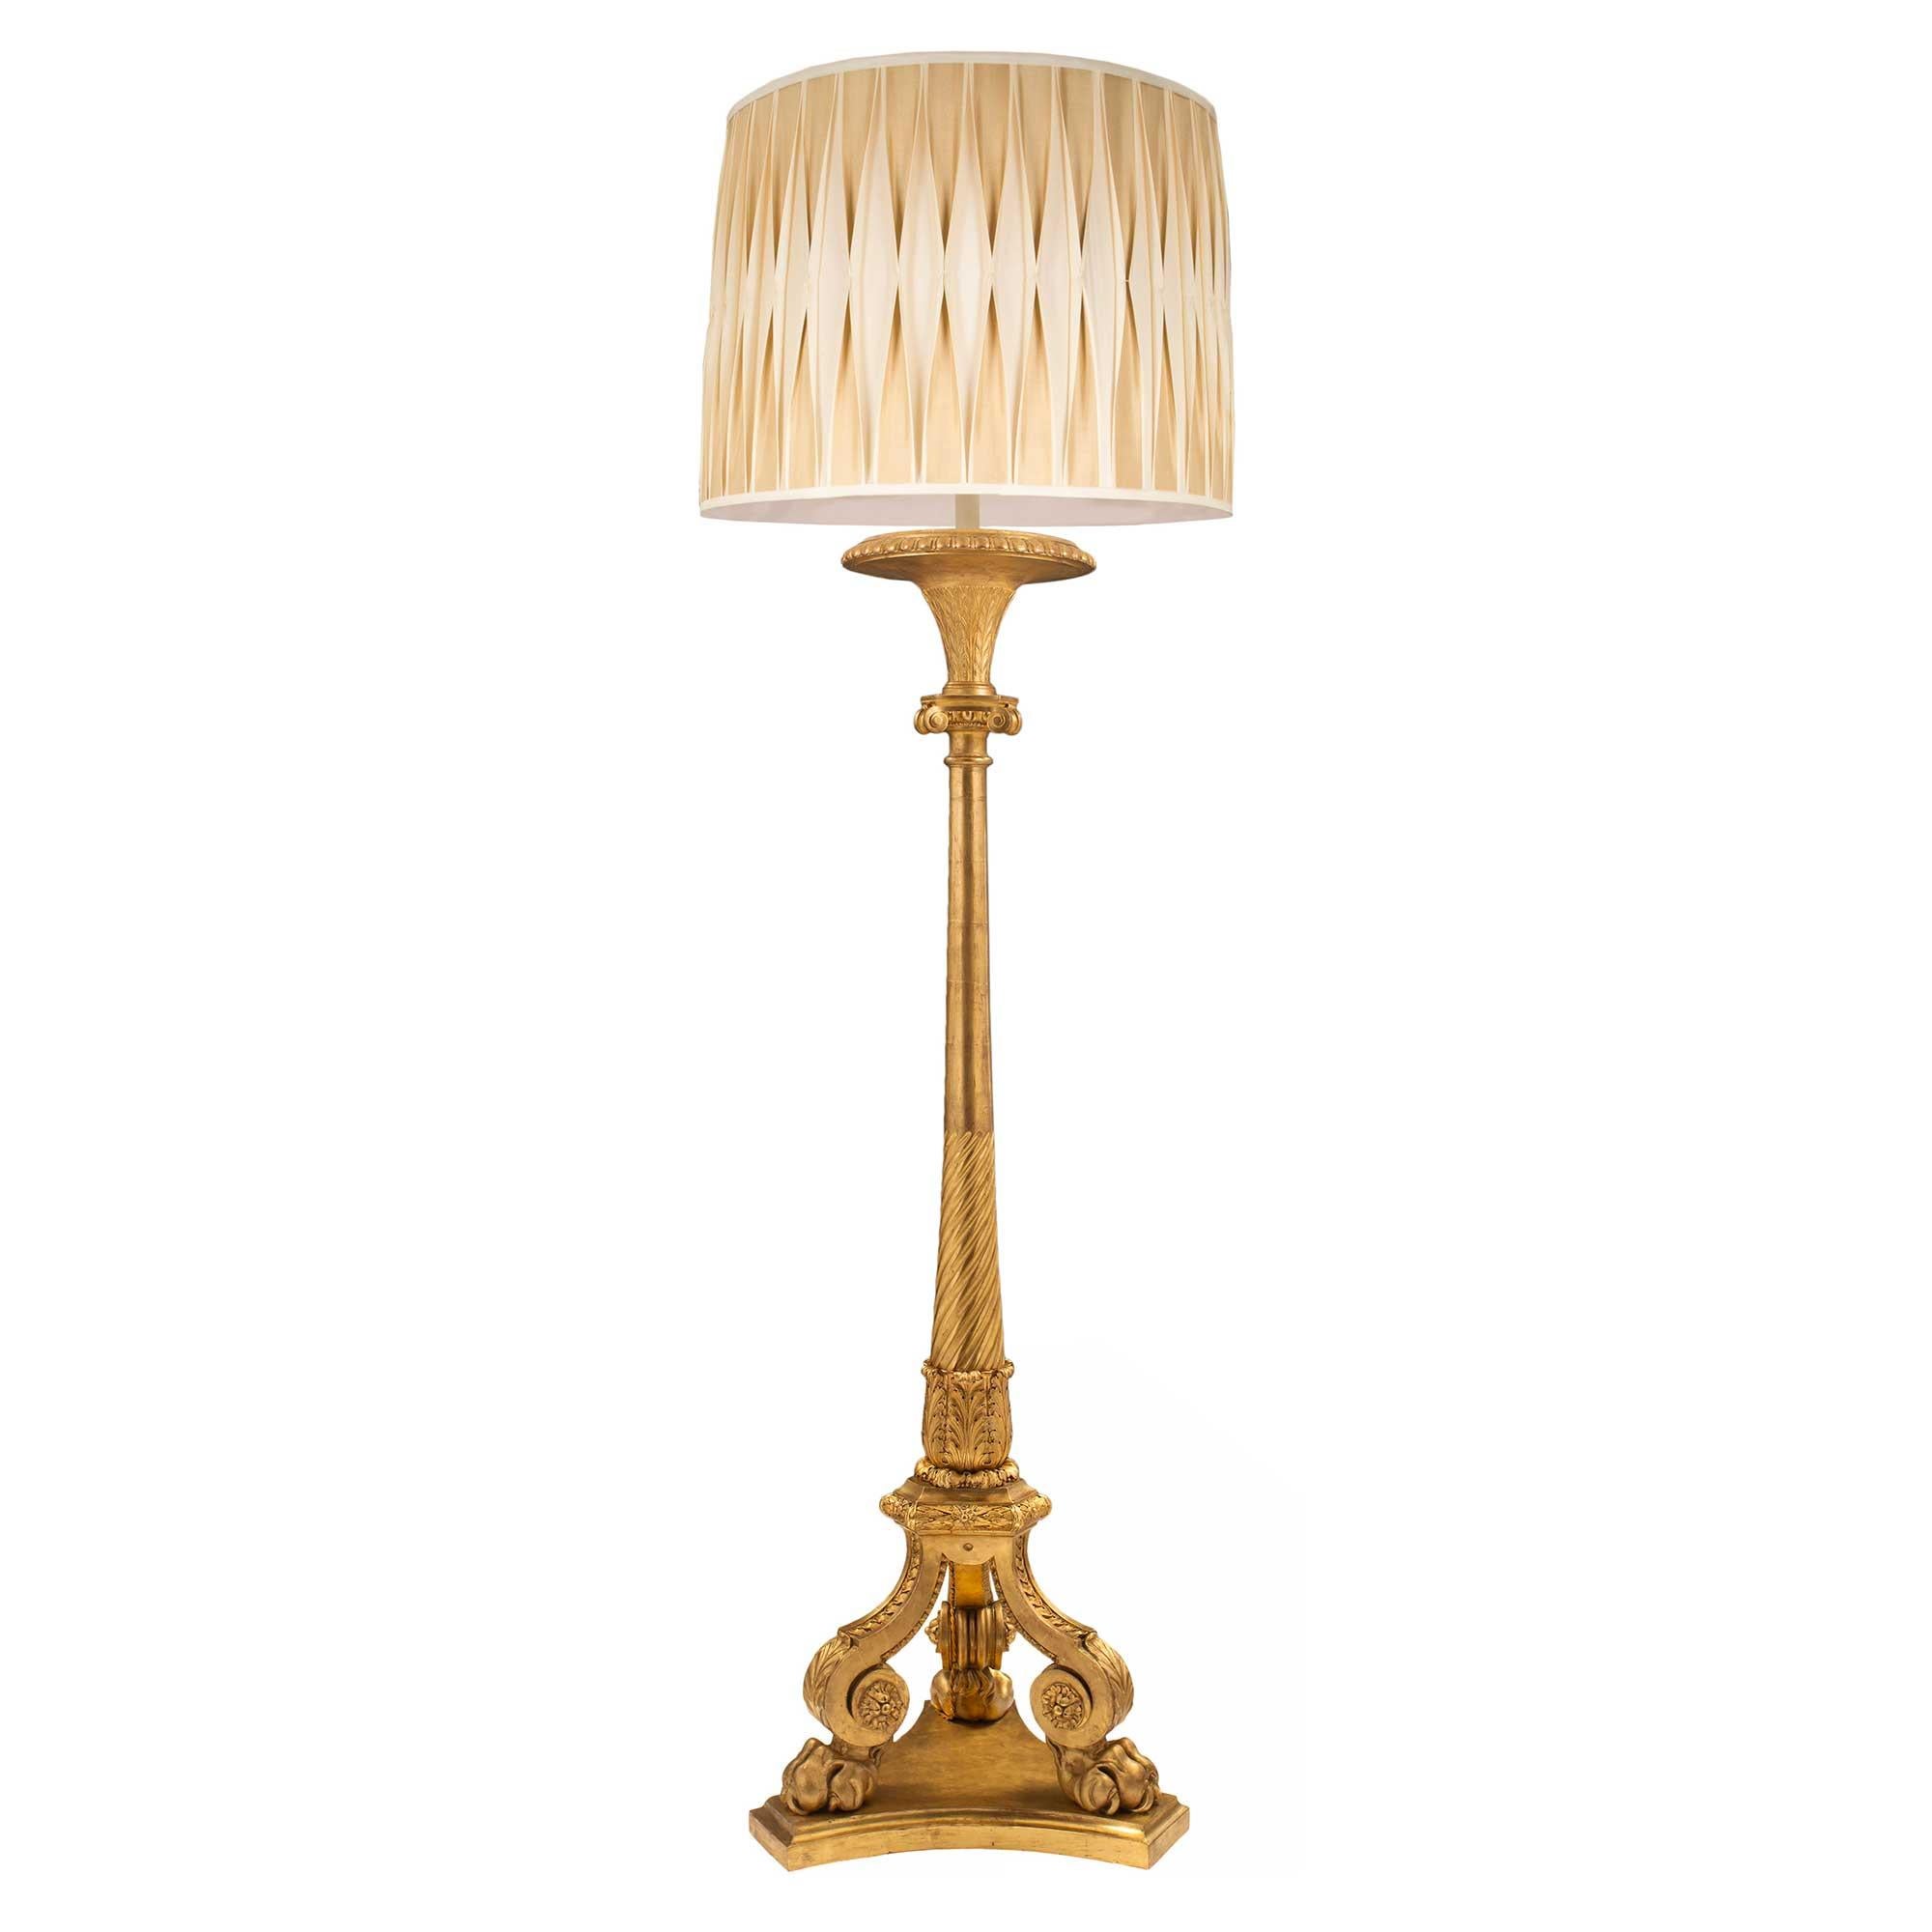 Un élégant lampadaire en bois doré de grande taille, de style Louis XVI, datant du milieu du XIXe siècle. La lampe est surélevée par une base triangulaire mouchetée aux côtés concaves au-dessus de supports demi-ronds. Au-dessus se trouvent